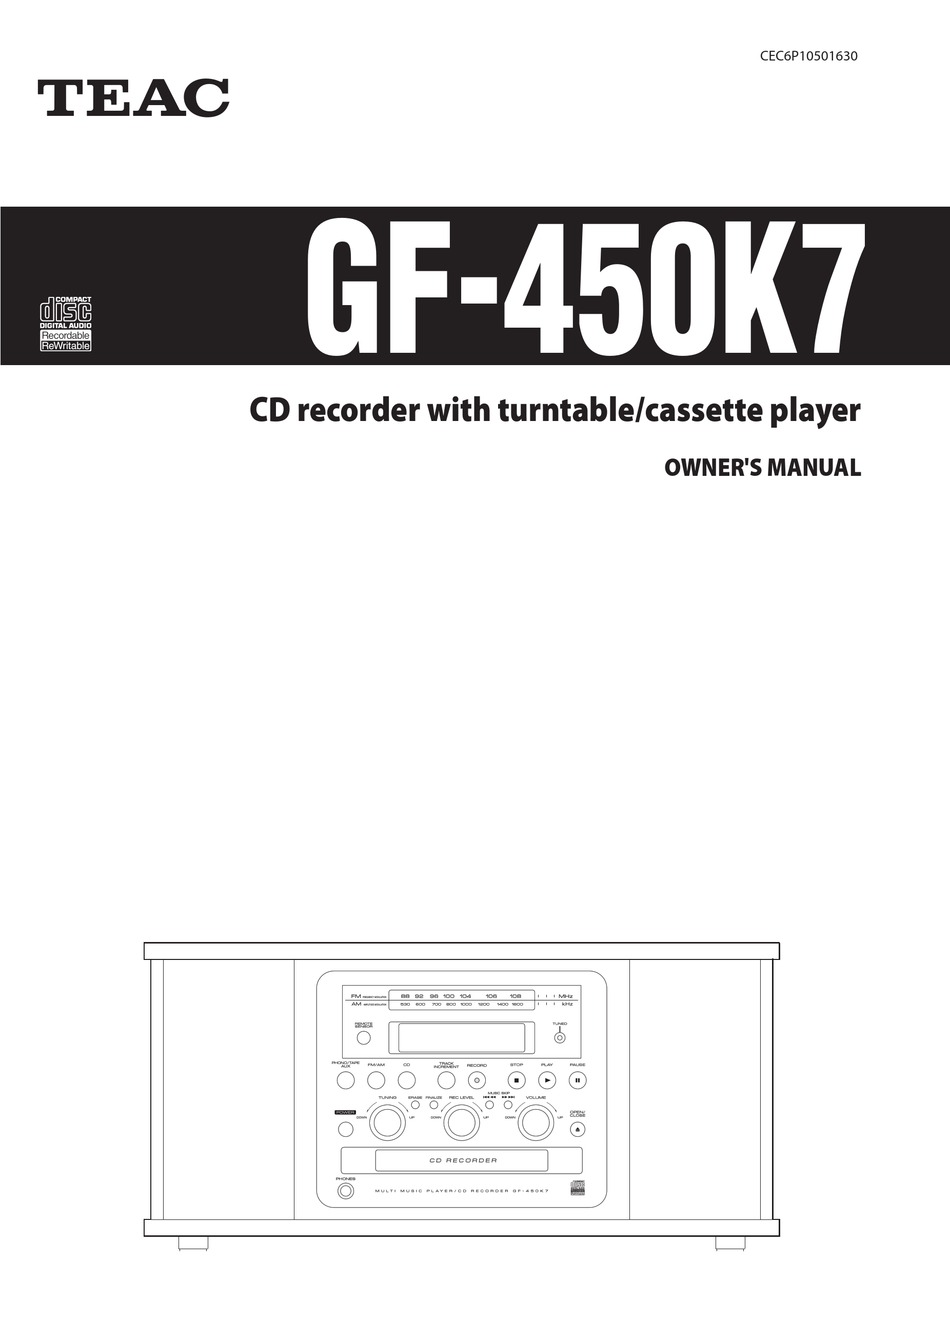 TEAC GF GF-450K7 OWNER'S MANUAL Pdf Download | ManualsLib